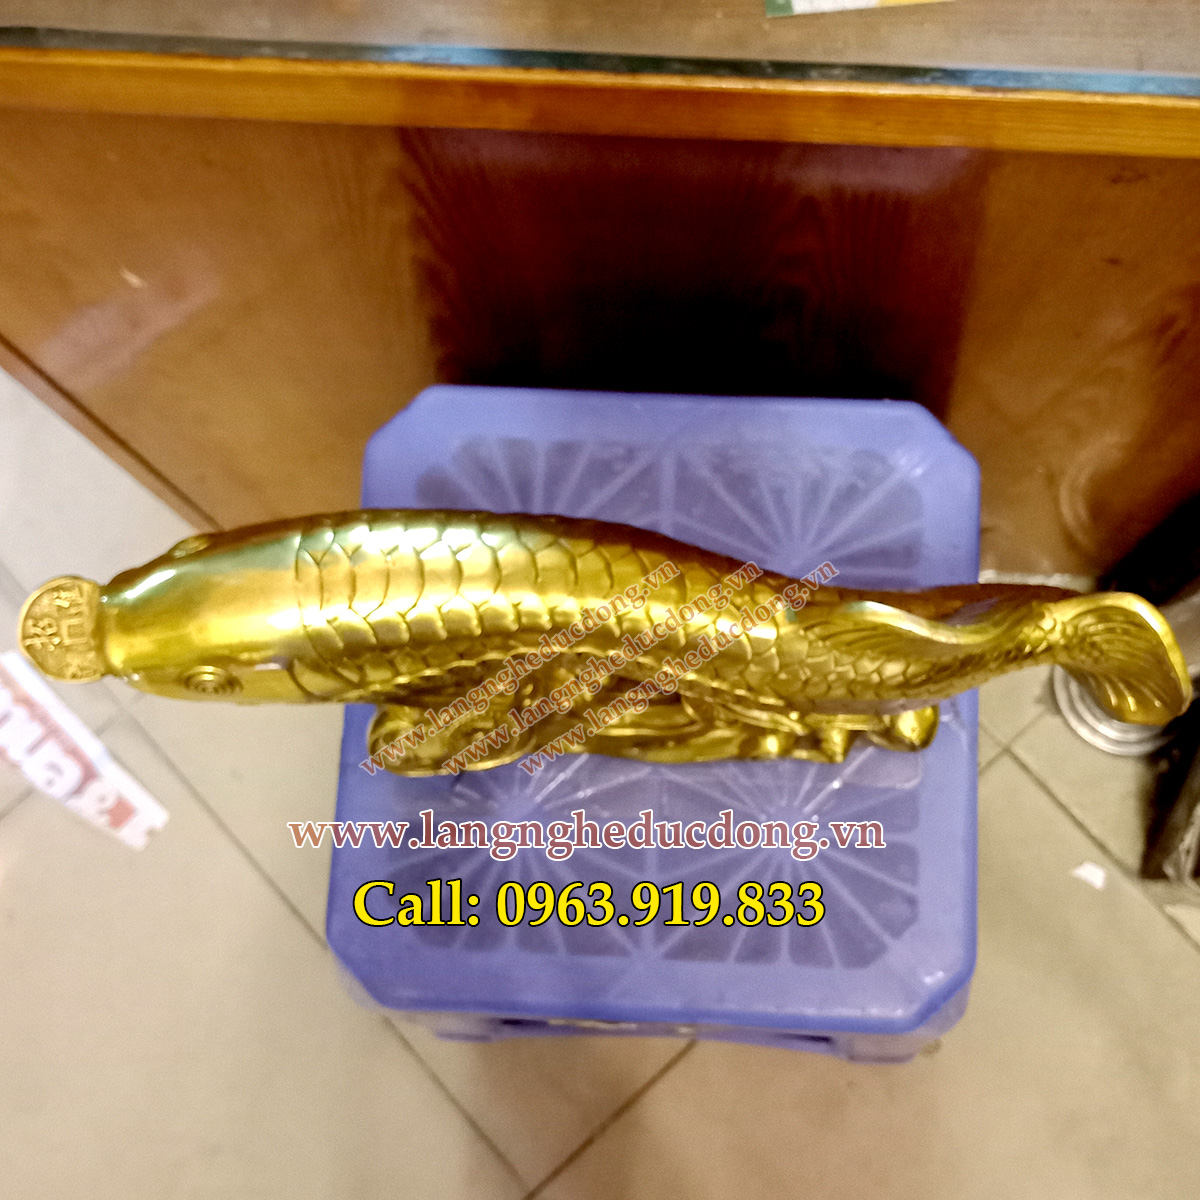 Tượng cá rồng bằng đồng, kim long bằng đồng, bán tượng cá rồng, giá tượng cá rồng